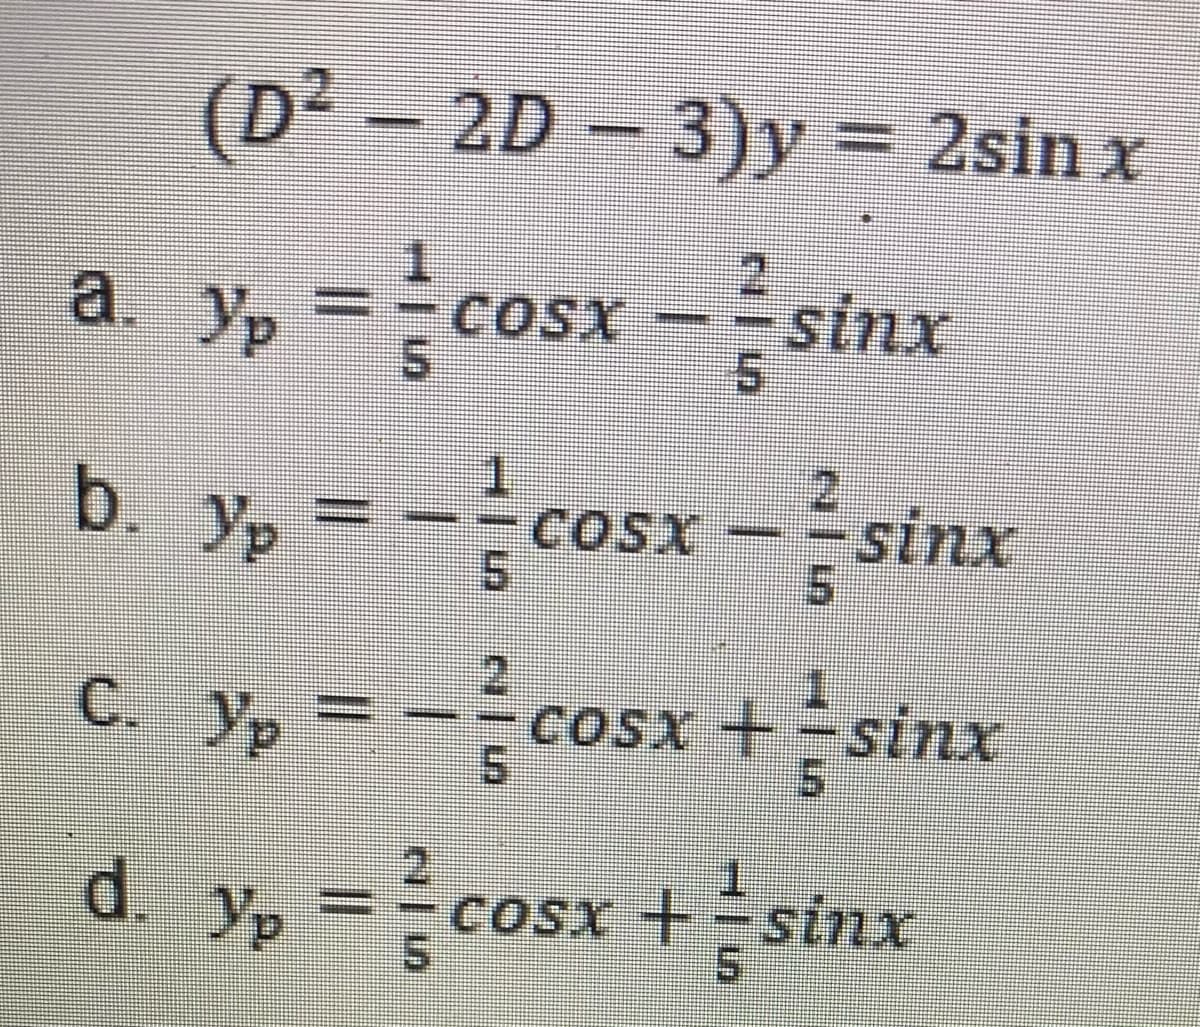 (D² – 2D – 3)y = 2sin x
a y, = \cosx – ? sinx
, = -{cosx = } sinx
COSX
2.
b. yp=
COSX
5.
c. y, = --cosx + sinx
C. Yp
CoSx +sinx
d. y, =cosx +sinx
COSX +=sinx
